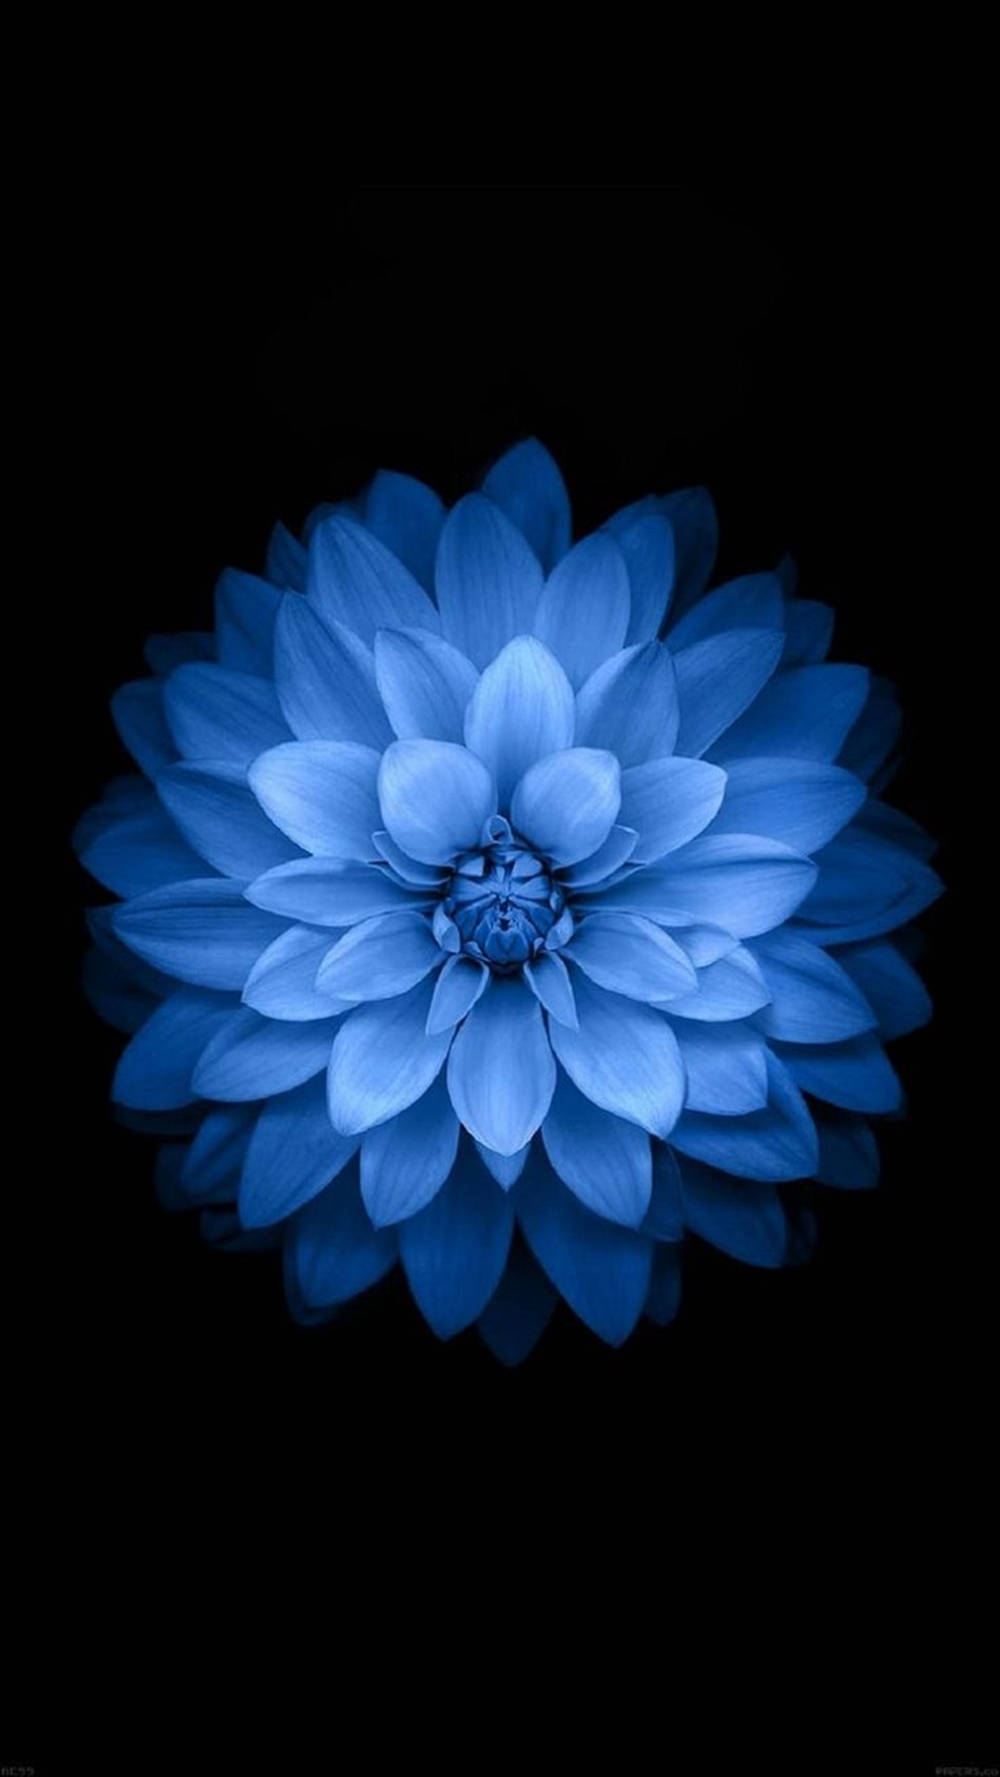 Exquisite Light Blue Dahlia In Bloom